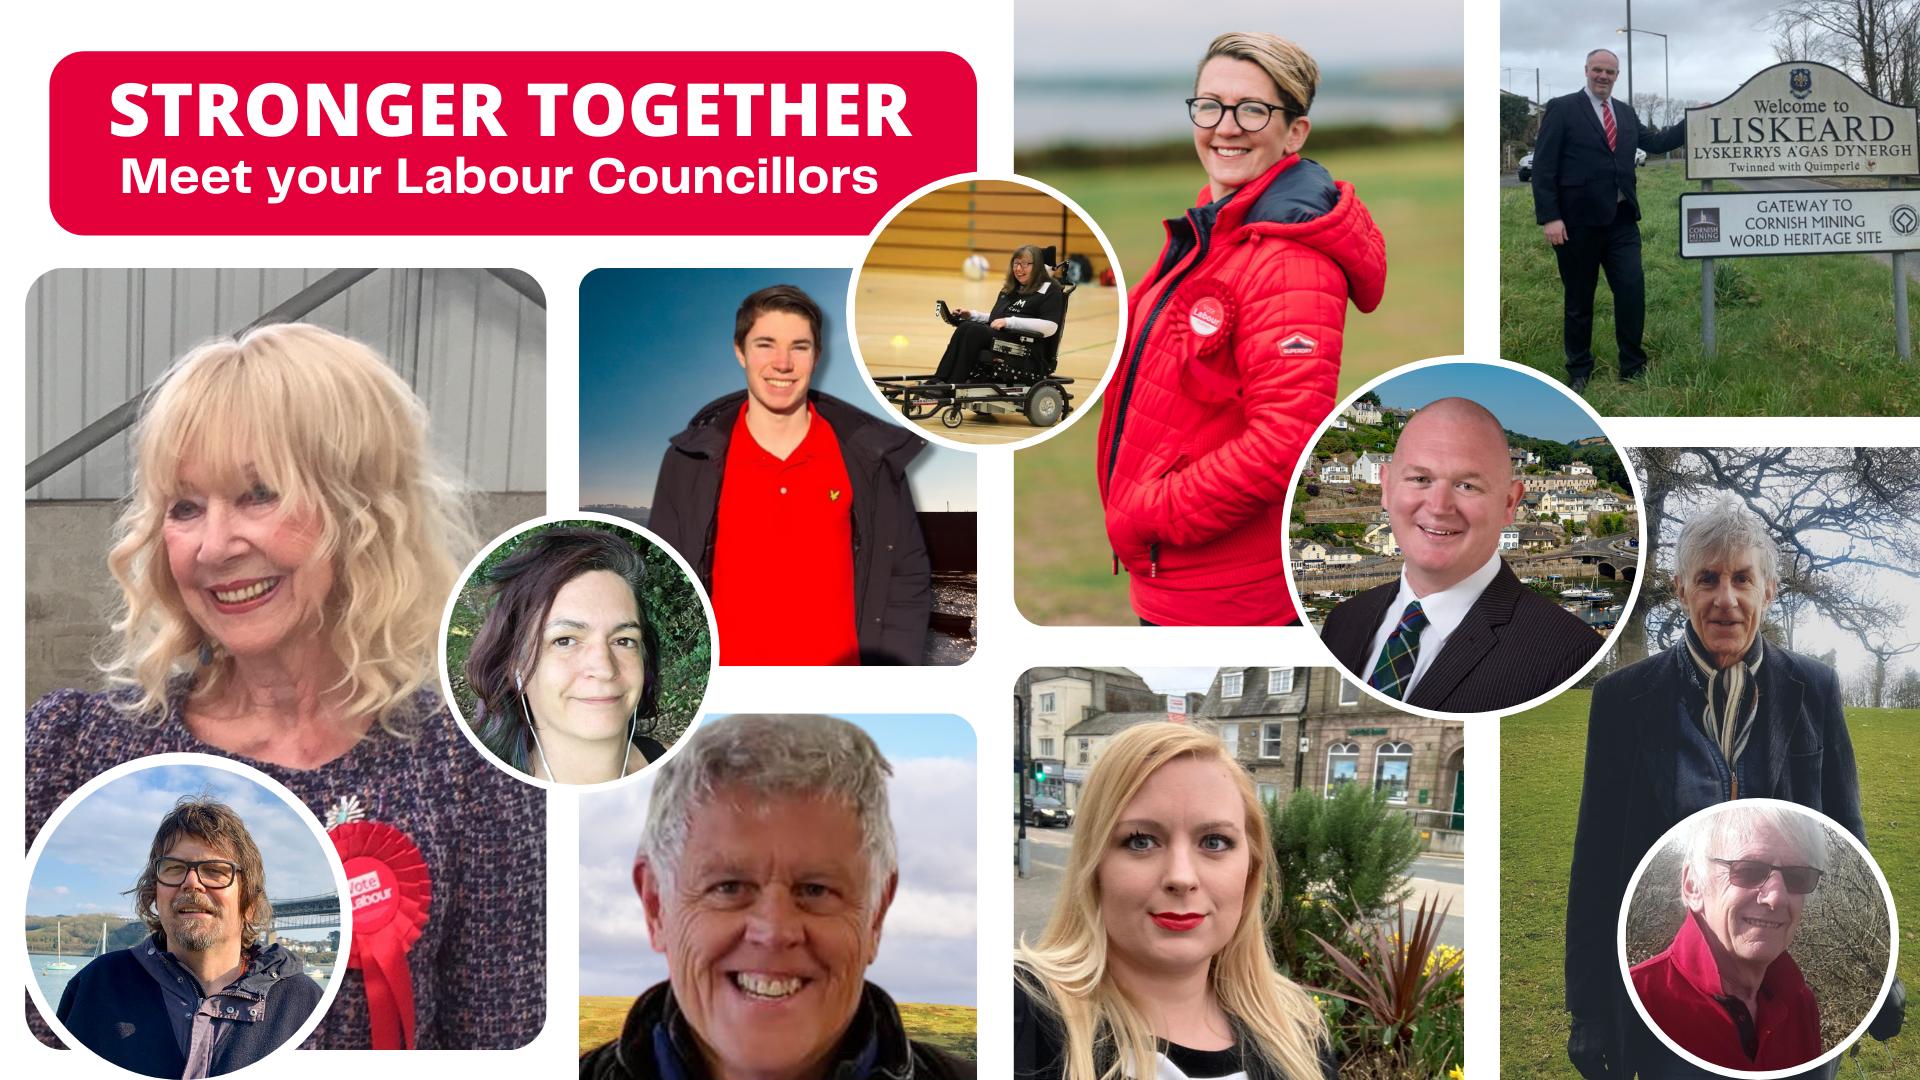 Your Labour Councillors